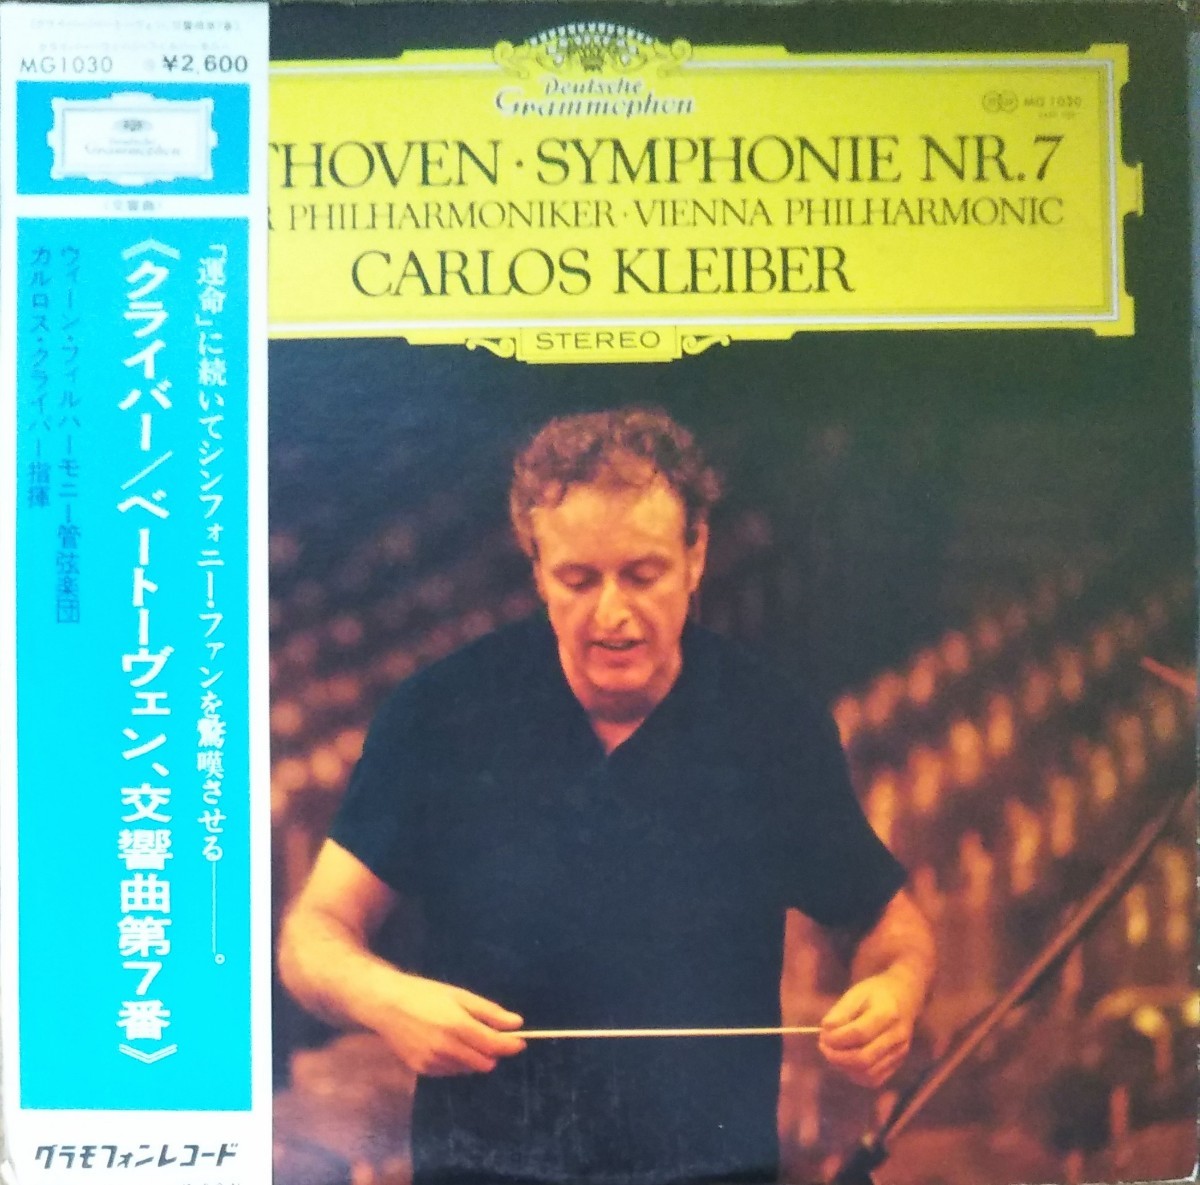 ベートーヴェン 交響曲7番 C.クライバー 国内盤 ウィーンフィル BEETHOVEN SYM.7 C.KLEIBER VIENA PHILHARMONIC ORCHESTRA 19756 LPの画像1